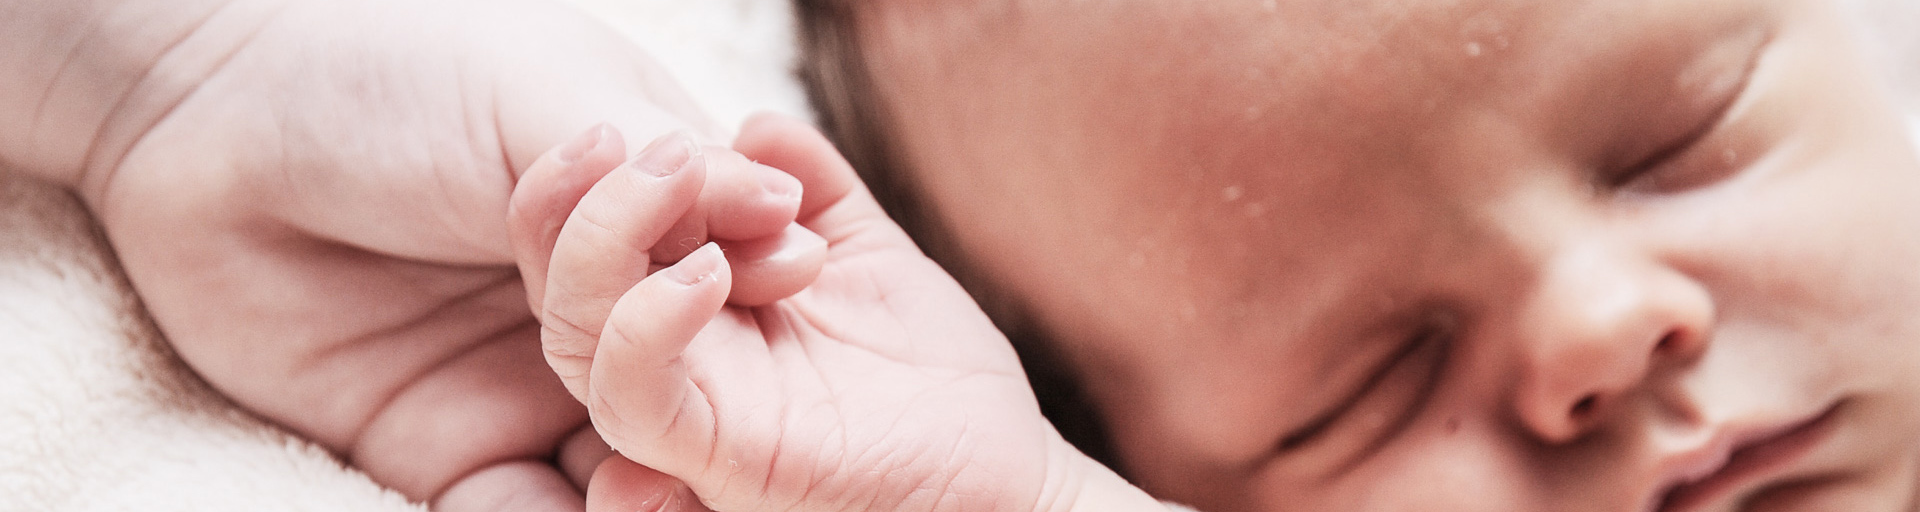 Neugeborenes hält Hand seiner Mutter